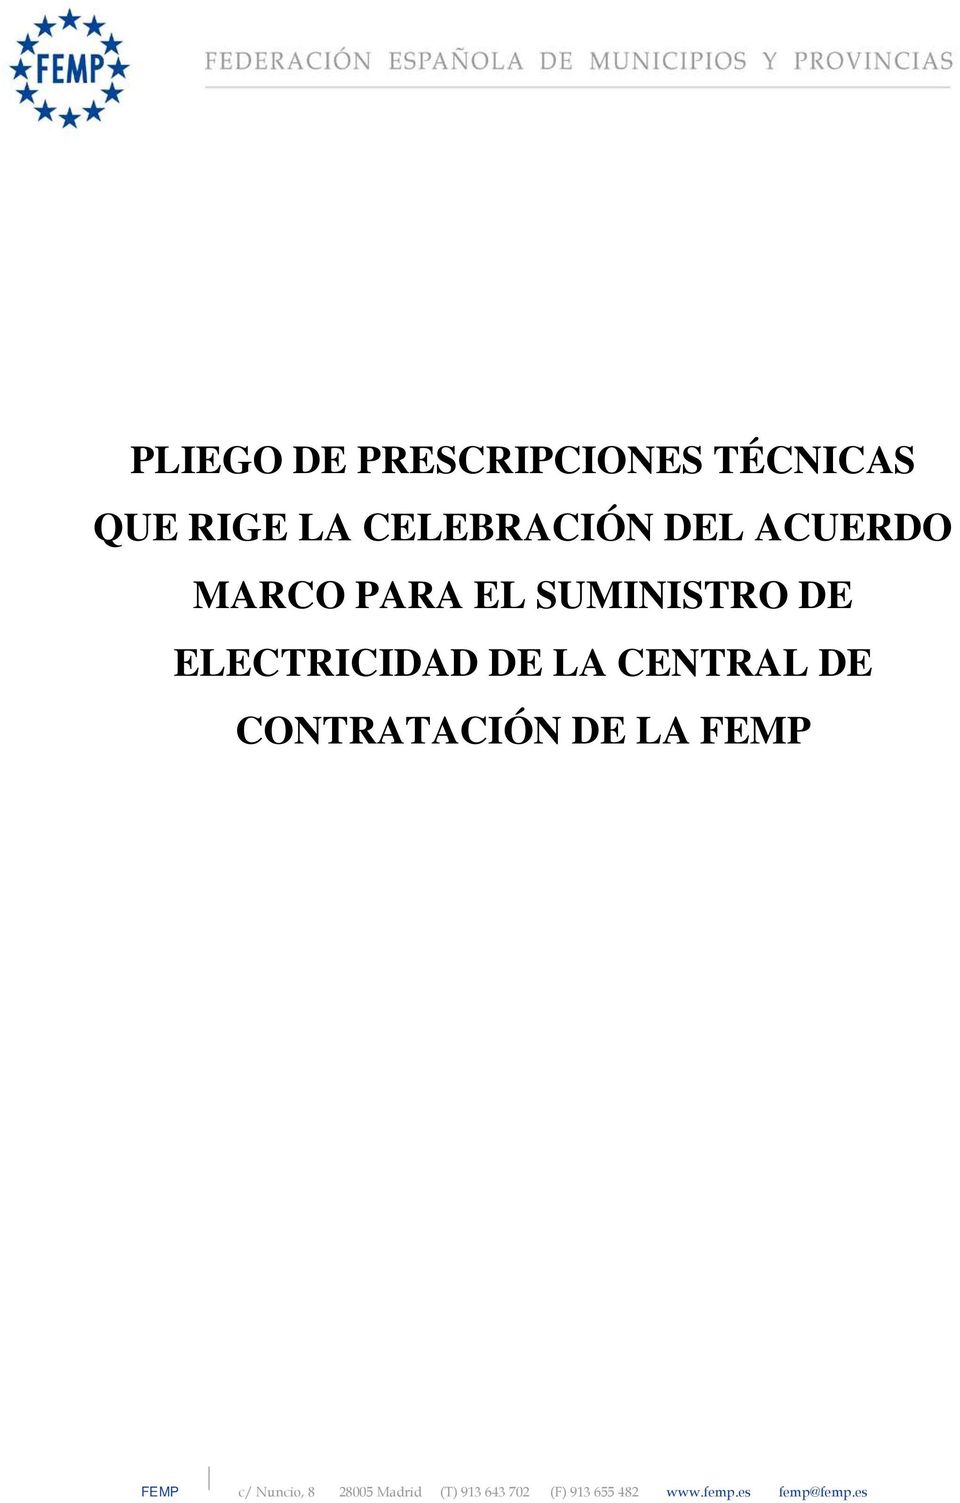 CENTRAL DE CONTRATACIÓN DE LA FEMP FEMP c/ Nuncio, 8 28005